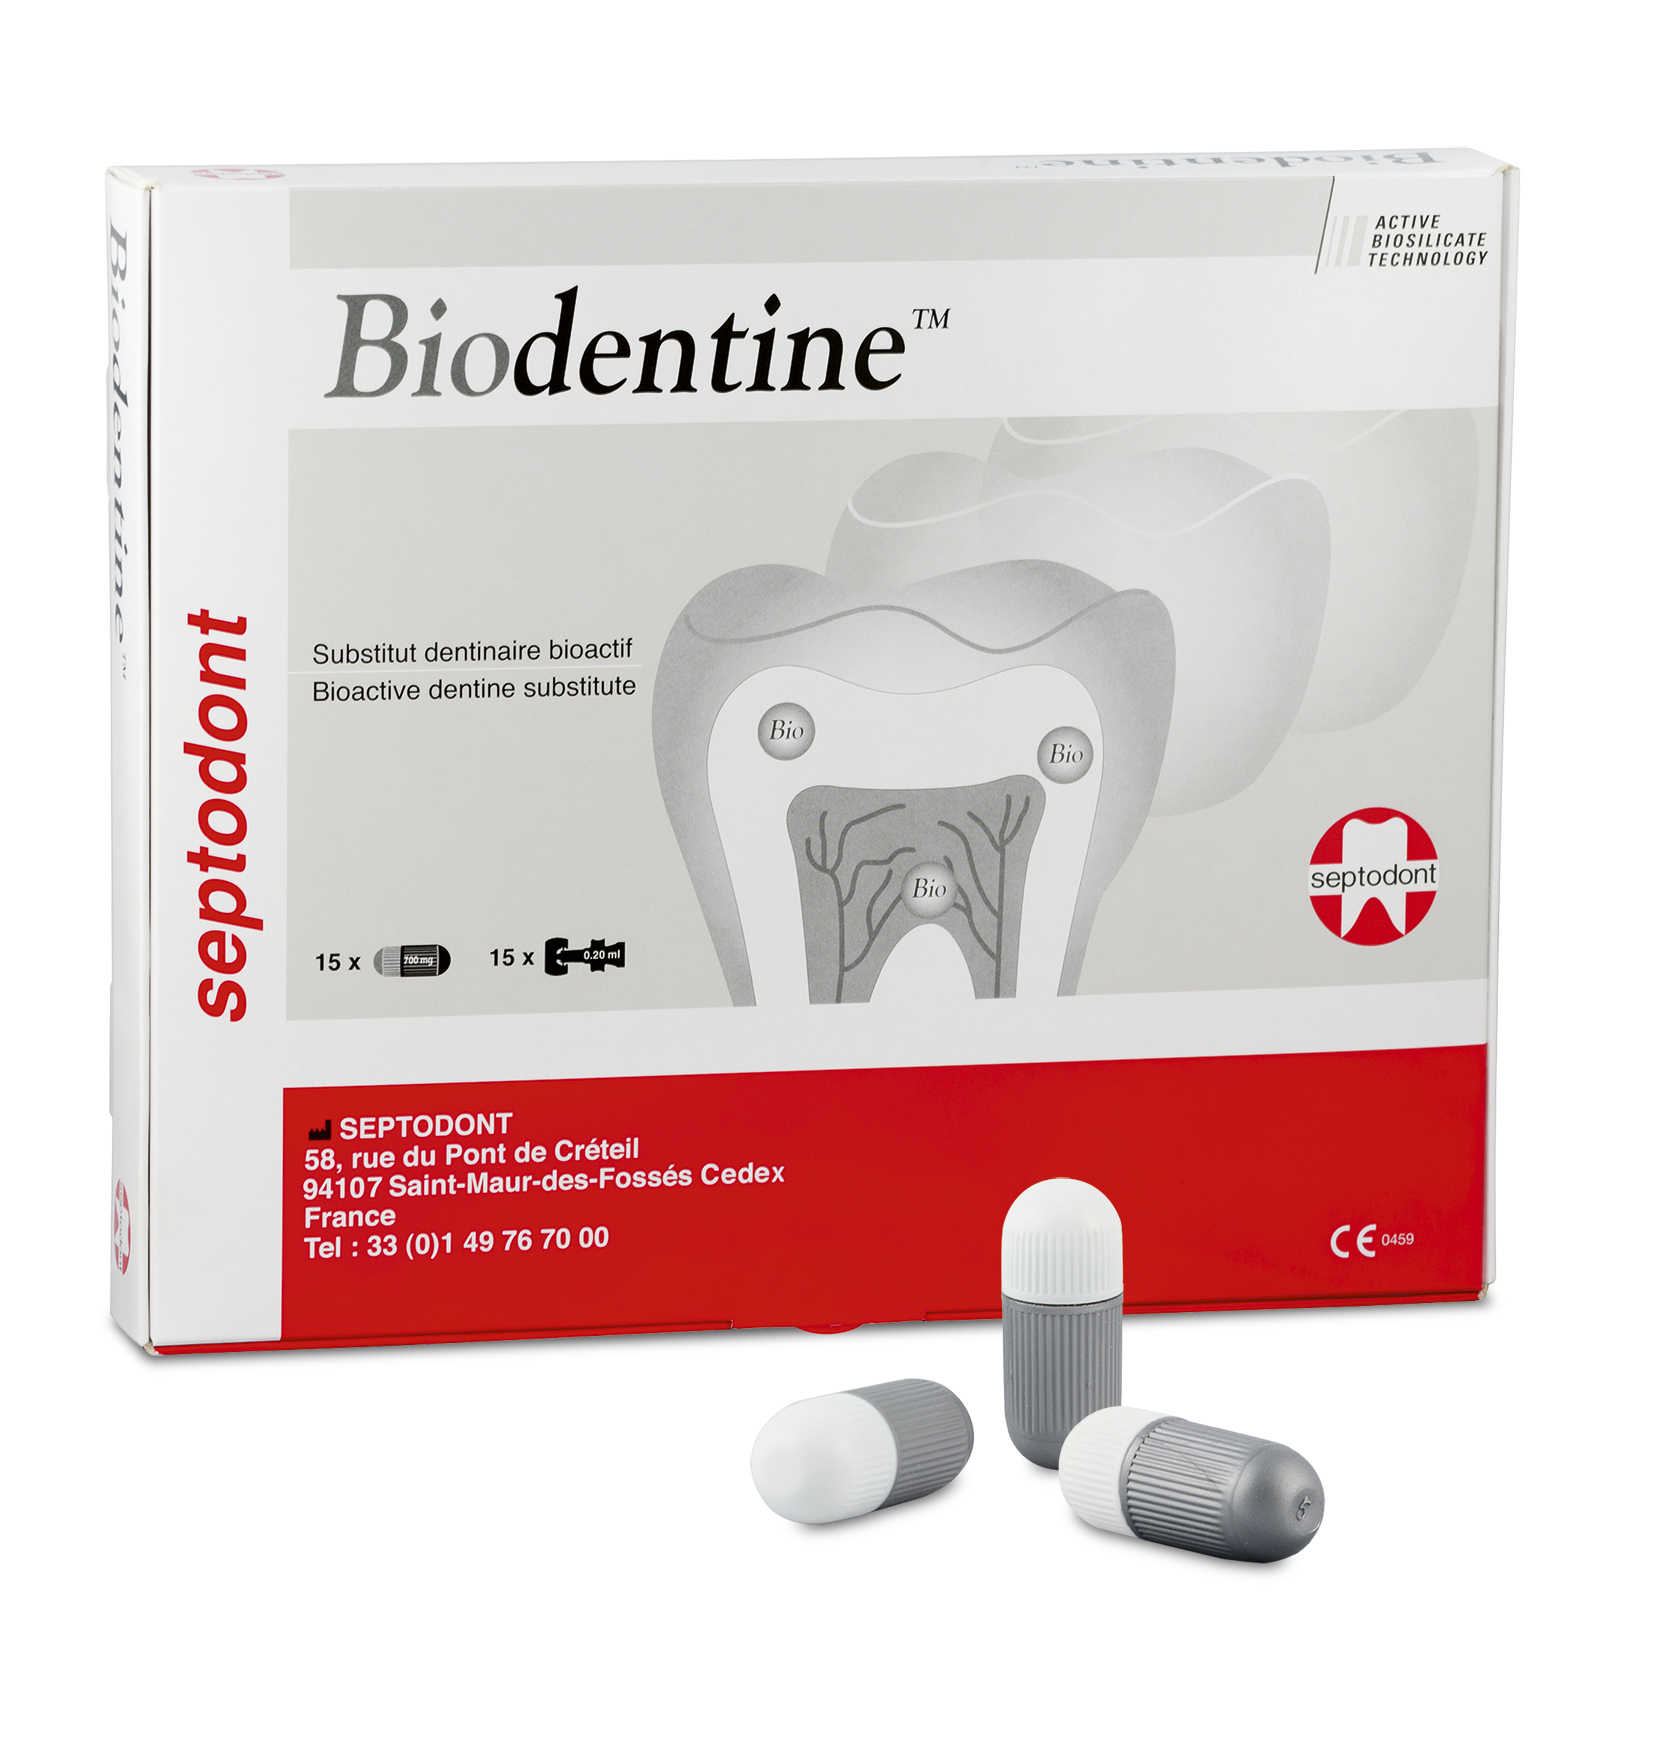 BiodnetinE